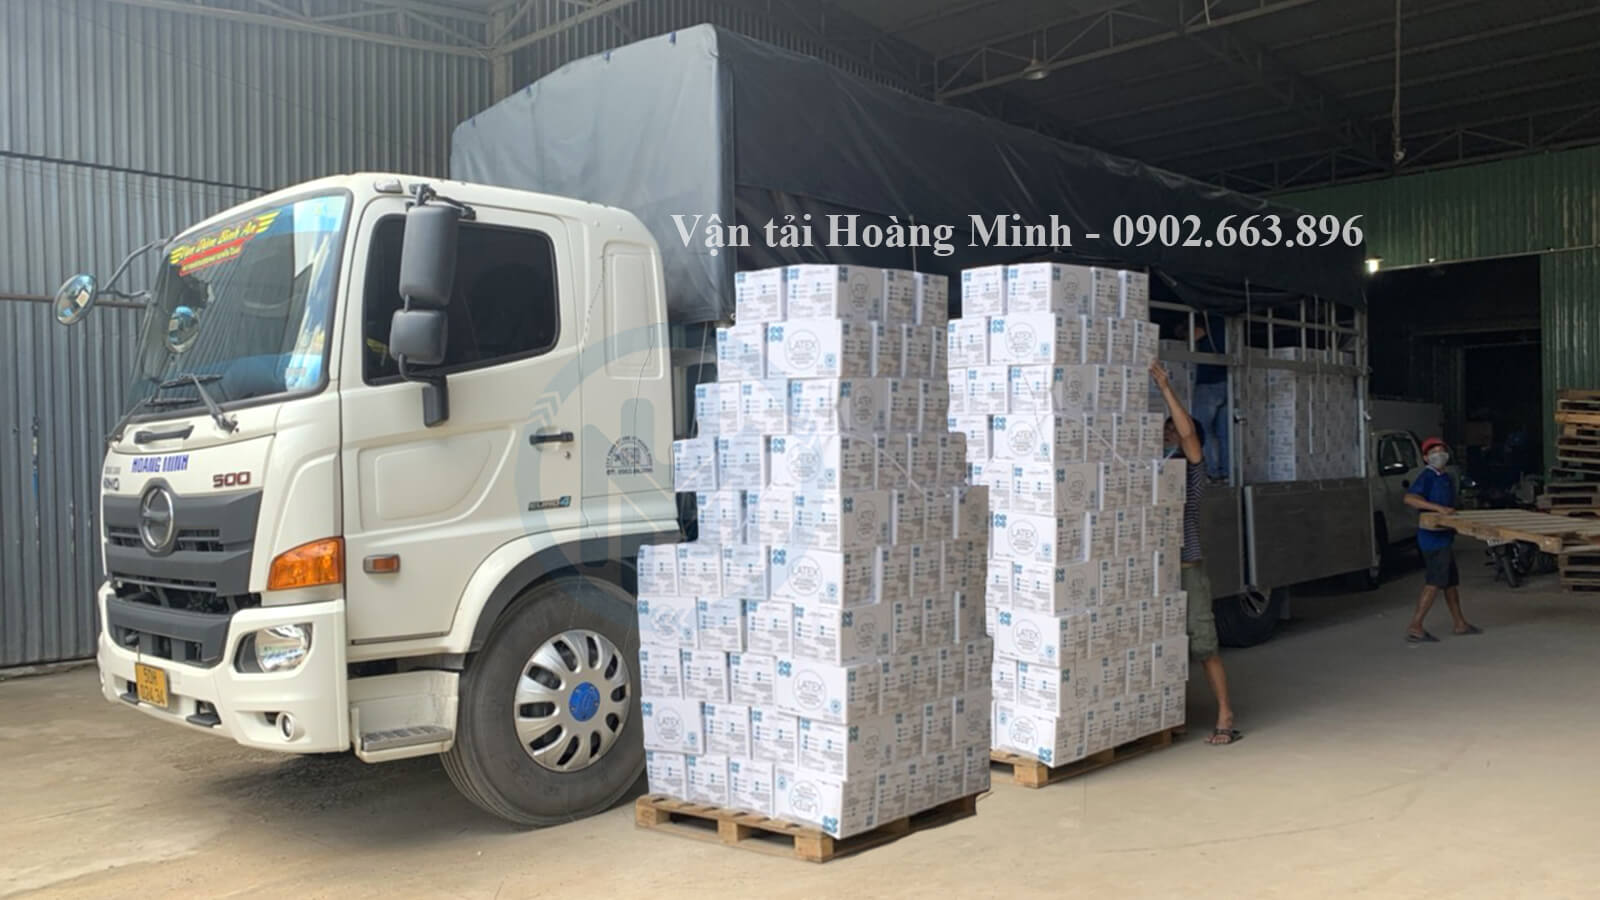 Hình ảnh xe tải 5 tấn của Hoàng Minh nhận chở hàng bột trét cho khách tại Vĩnh Long.jpg